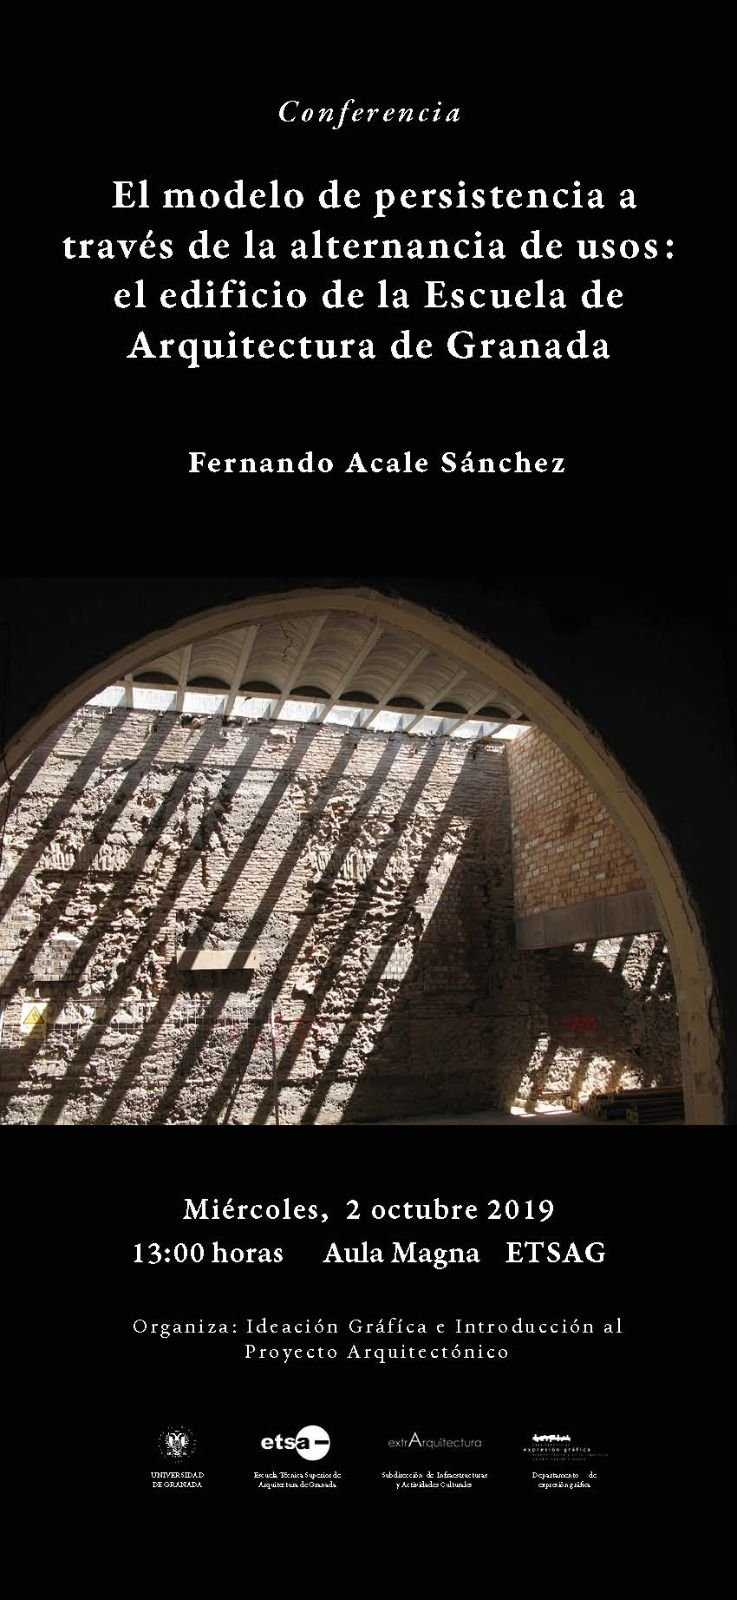 Cartel de la conferencia de Fernando Acale Sánchez